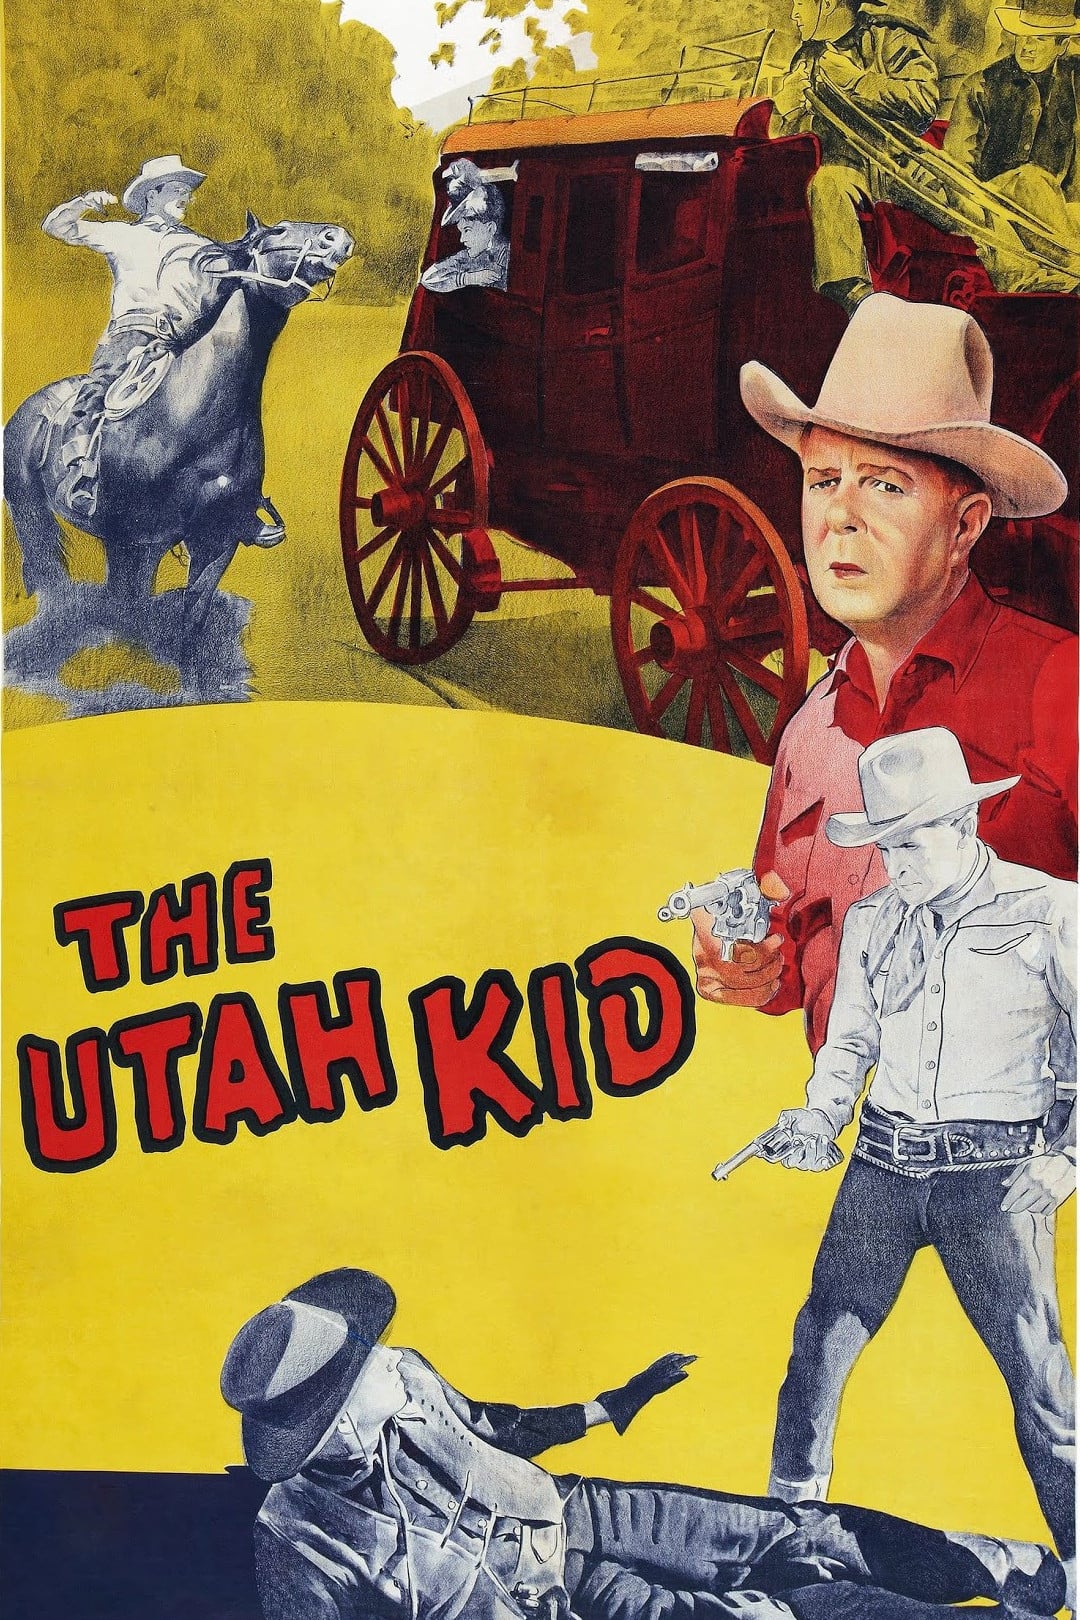 The Utah Kid (1944)